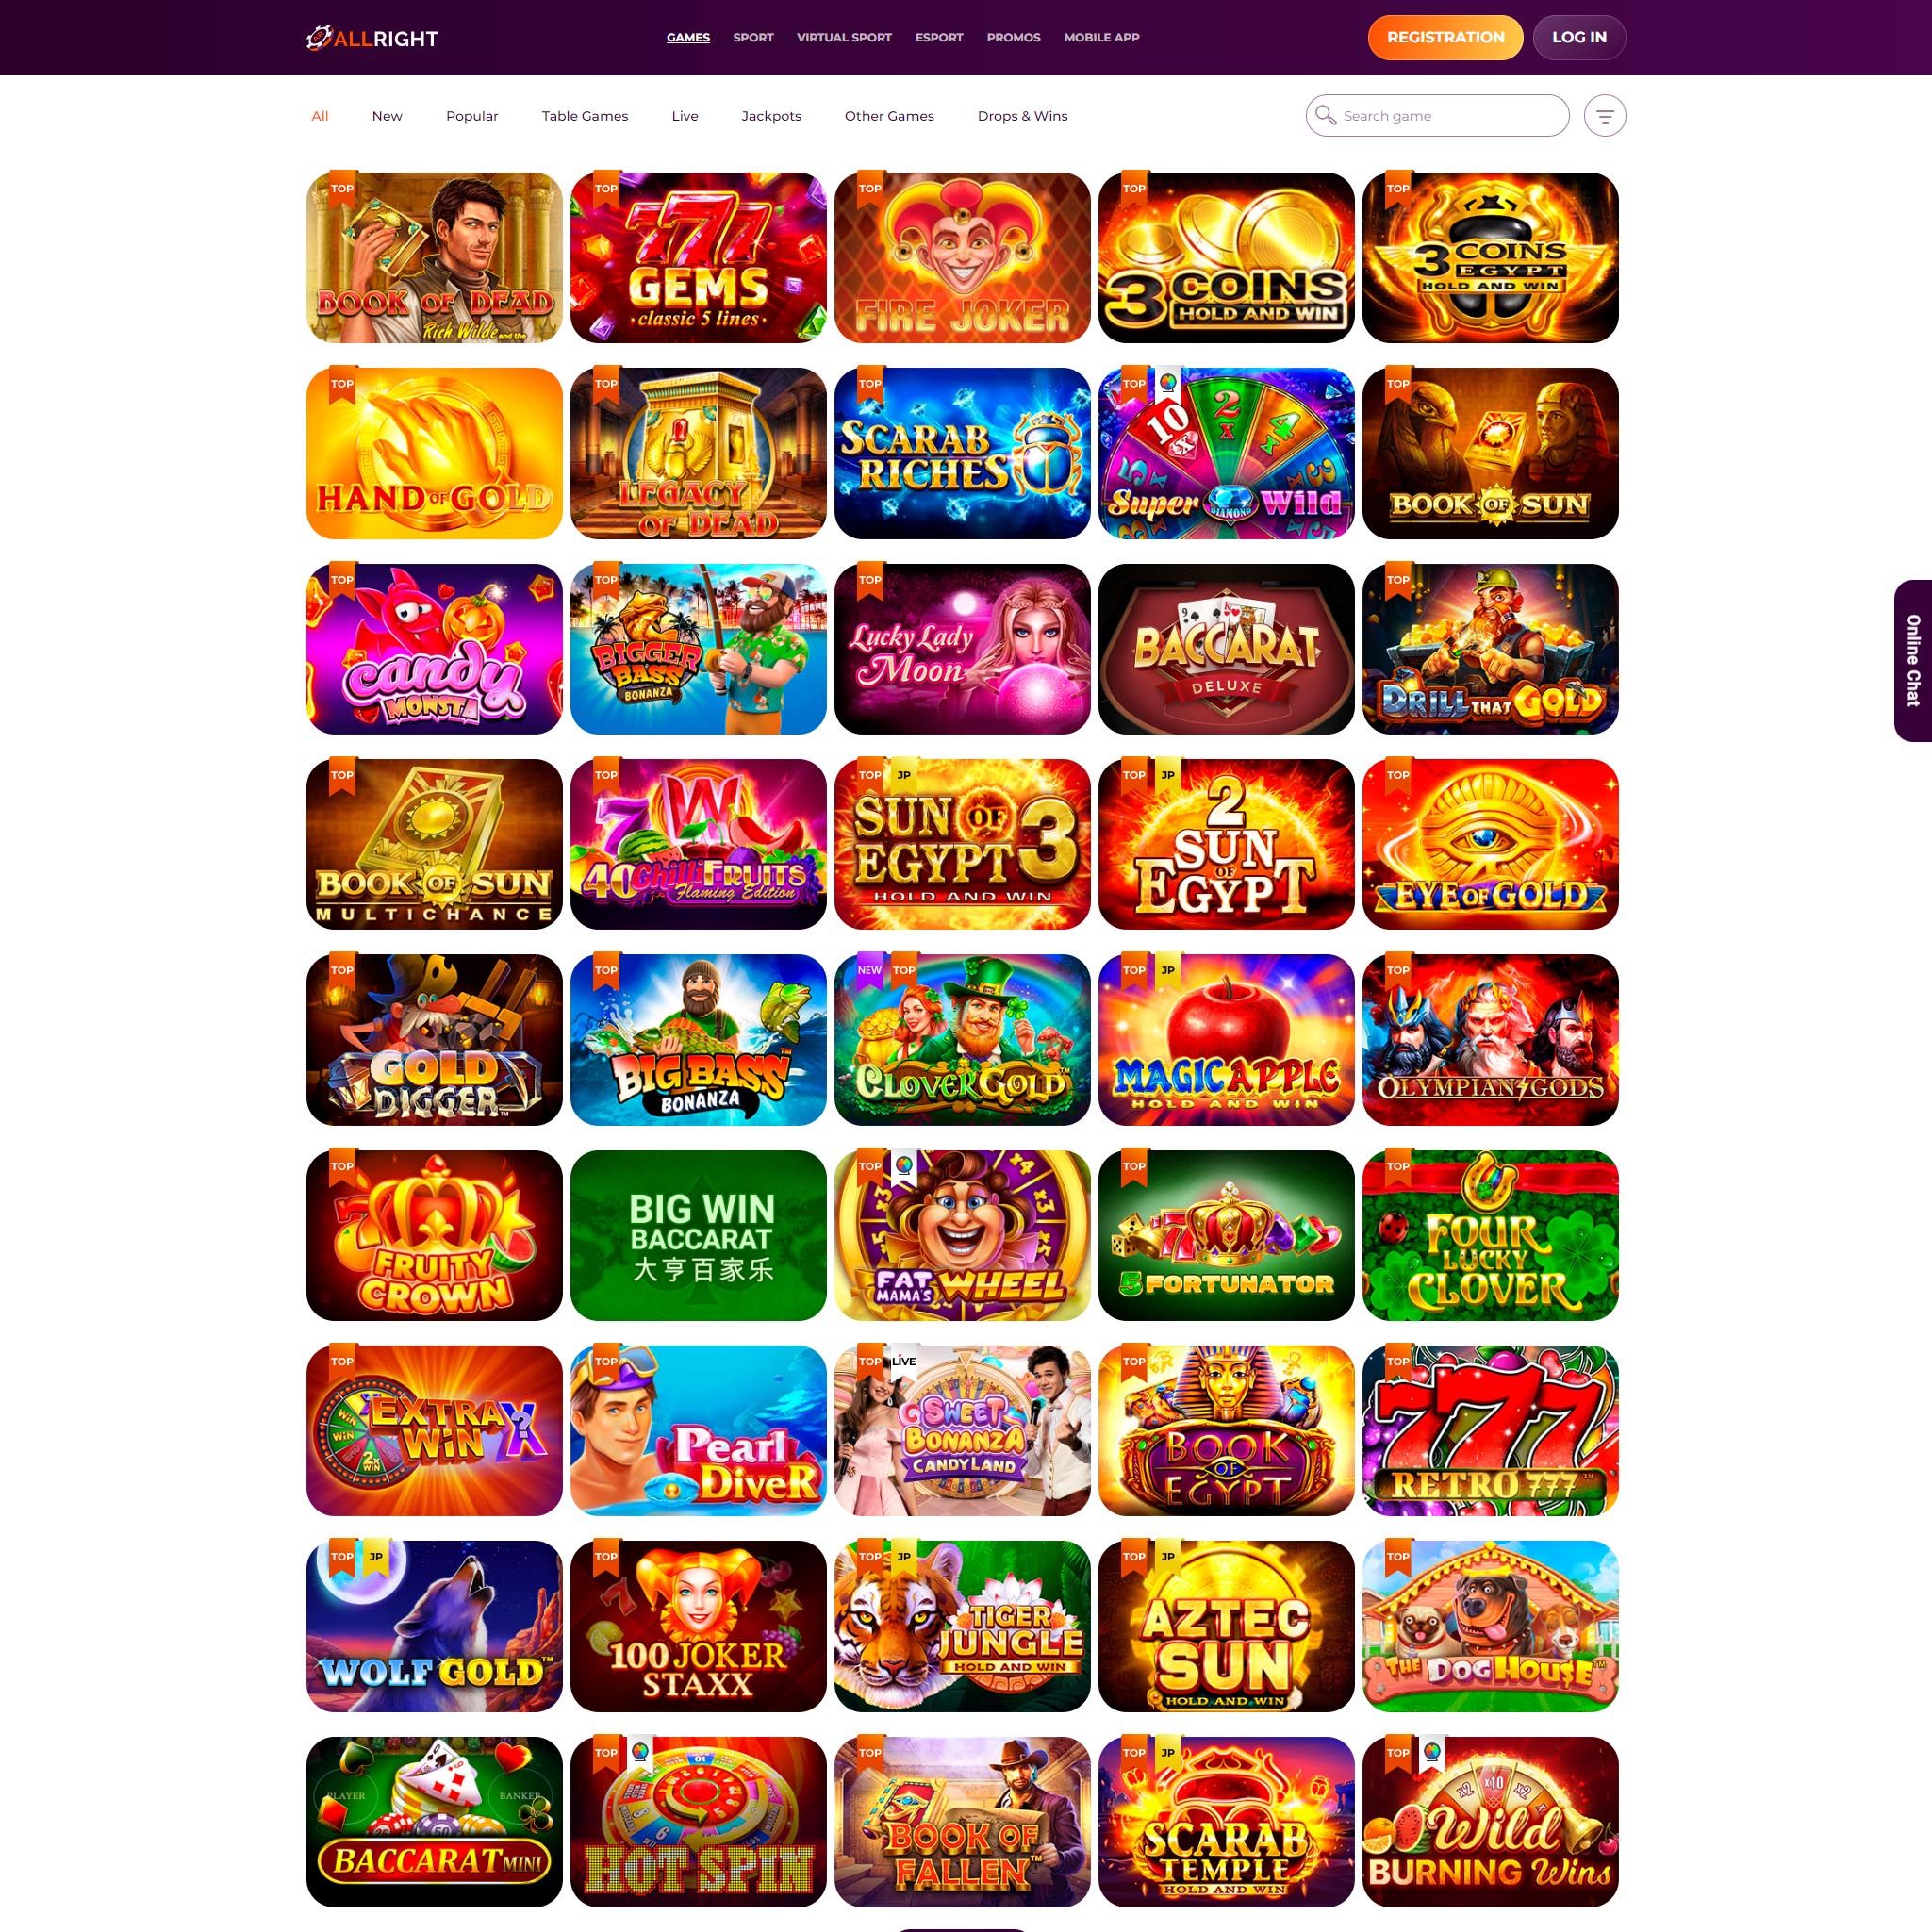 AllRight Casino full games catalogue